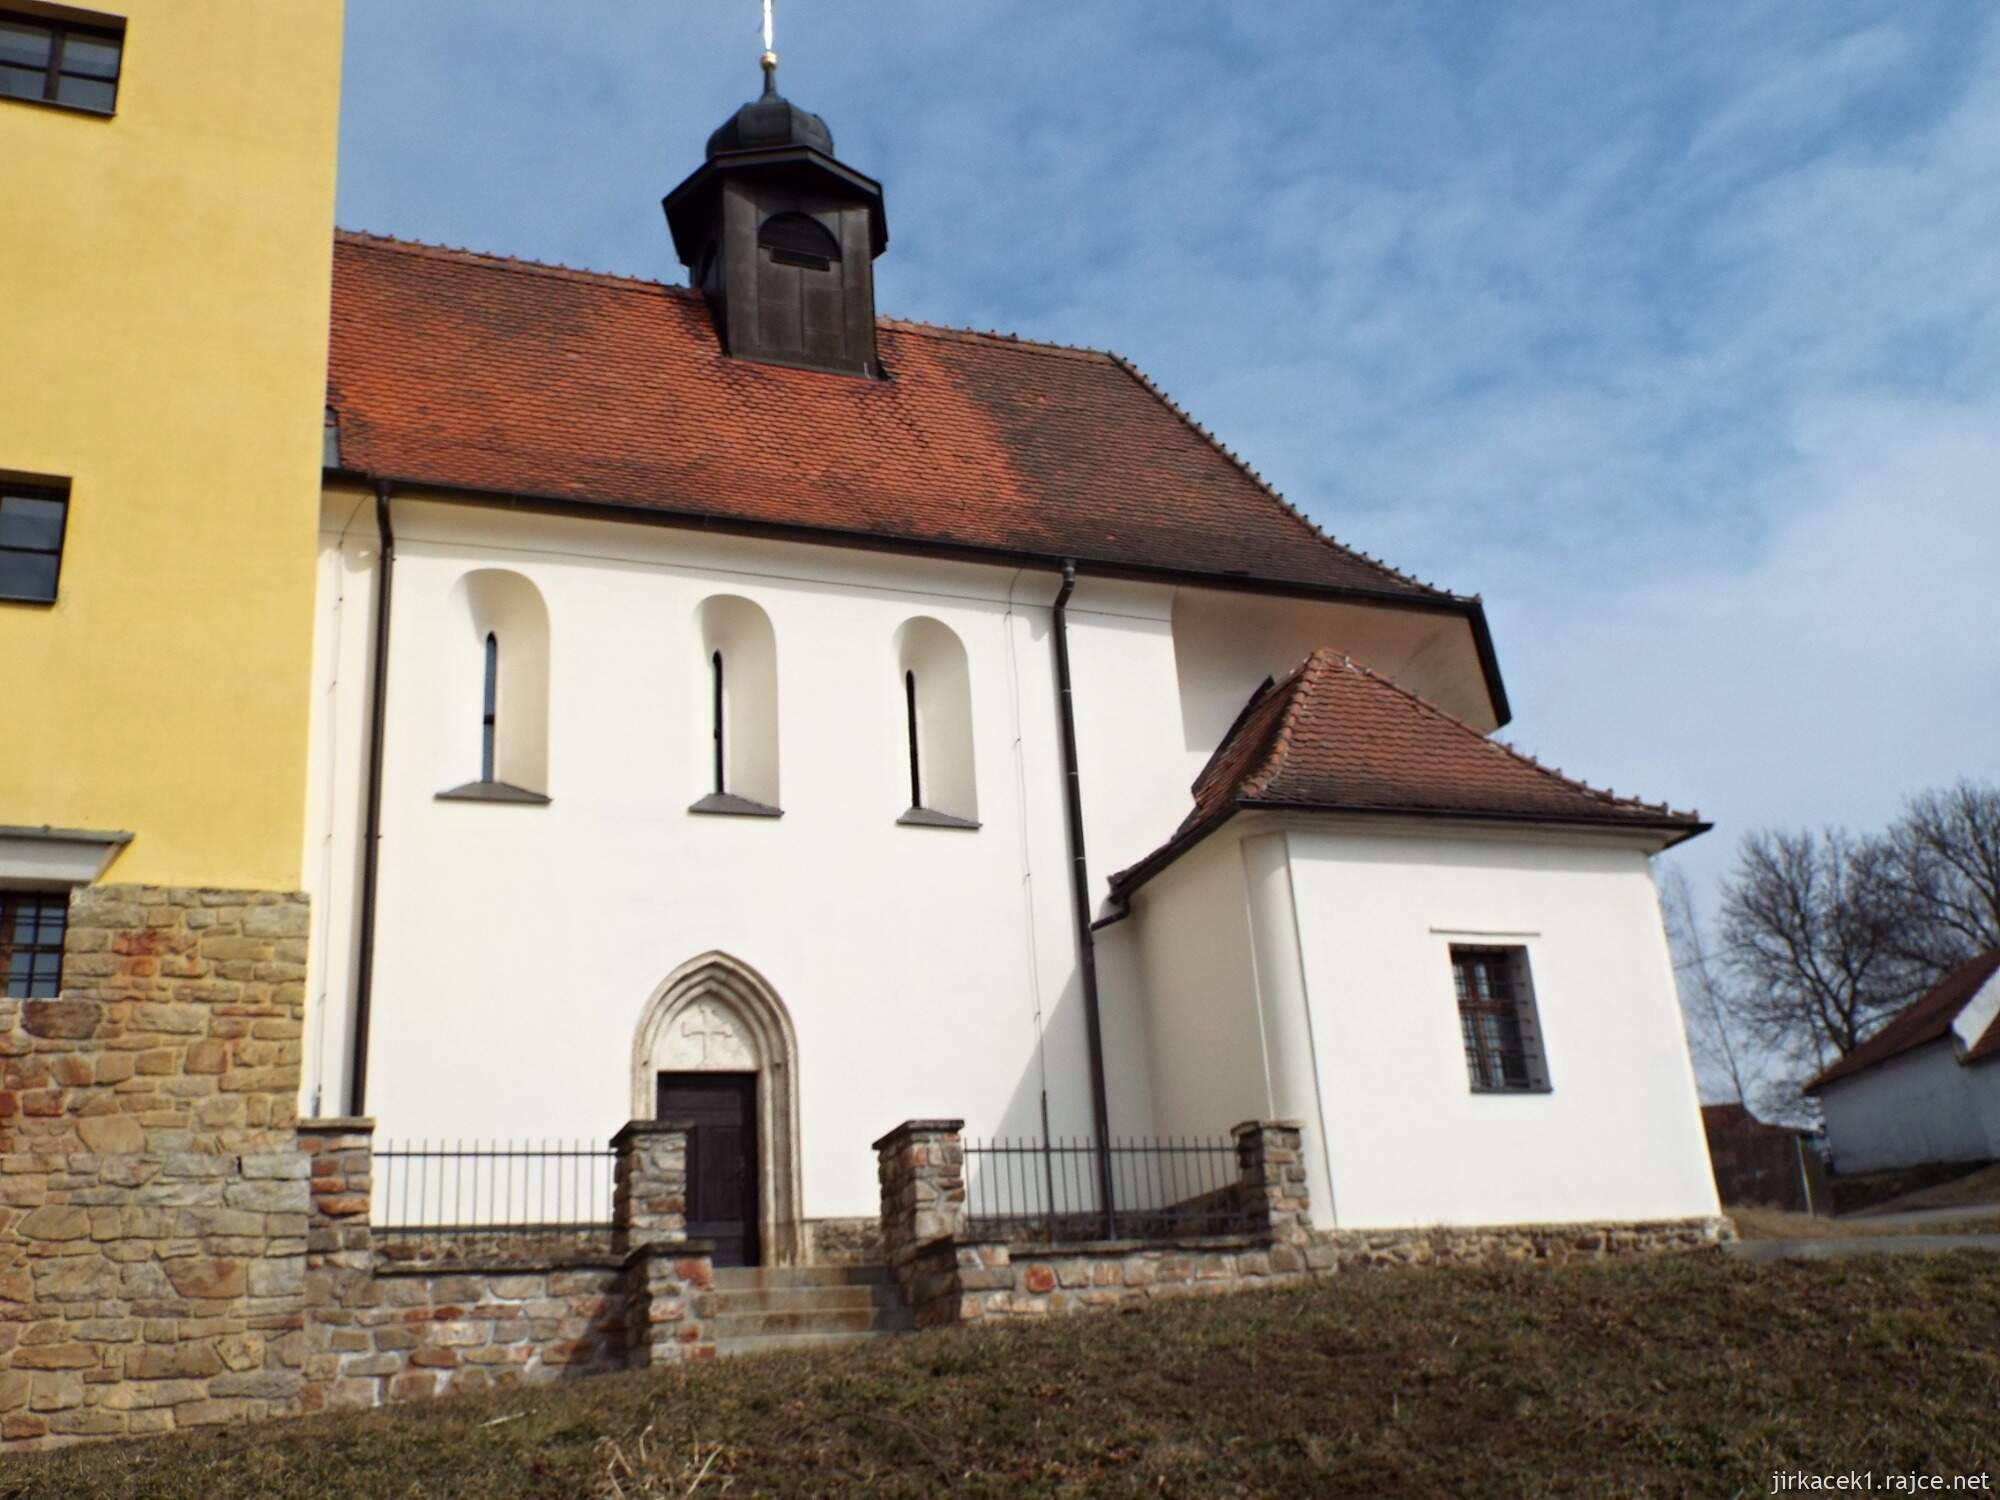 13 - Roubanina - Kostel sv. Ondřeje 16 - gotická část